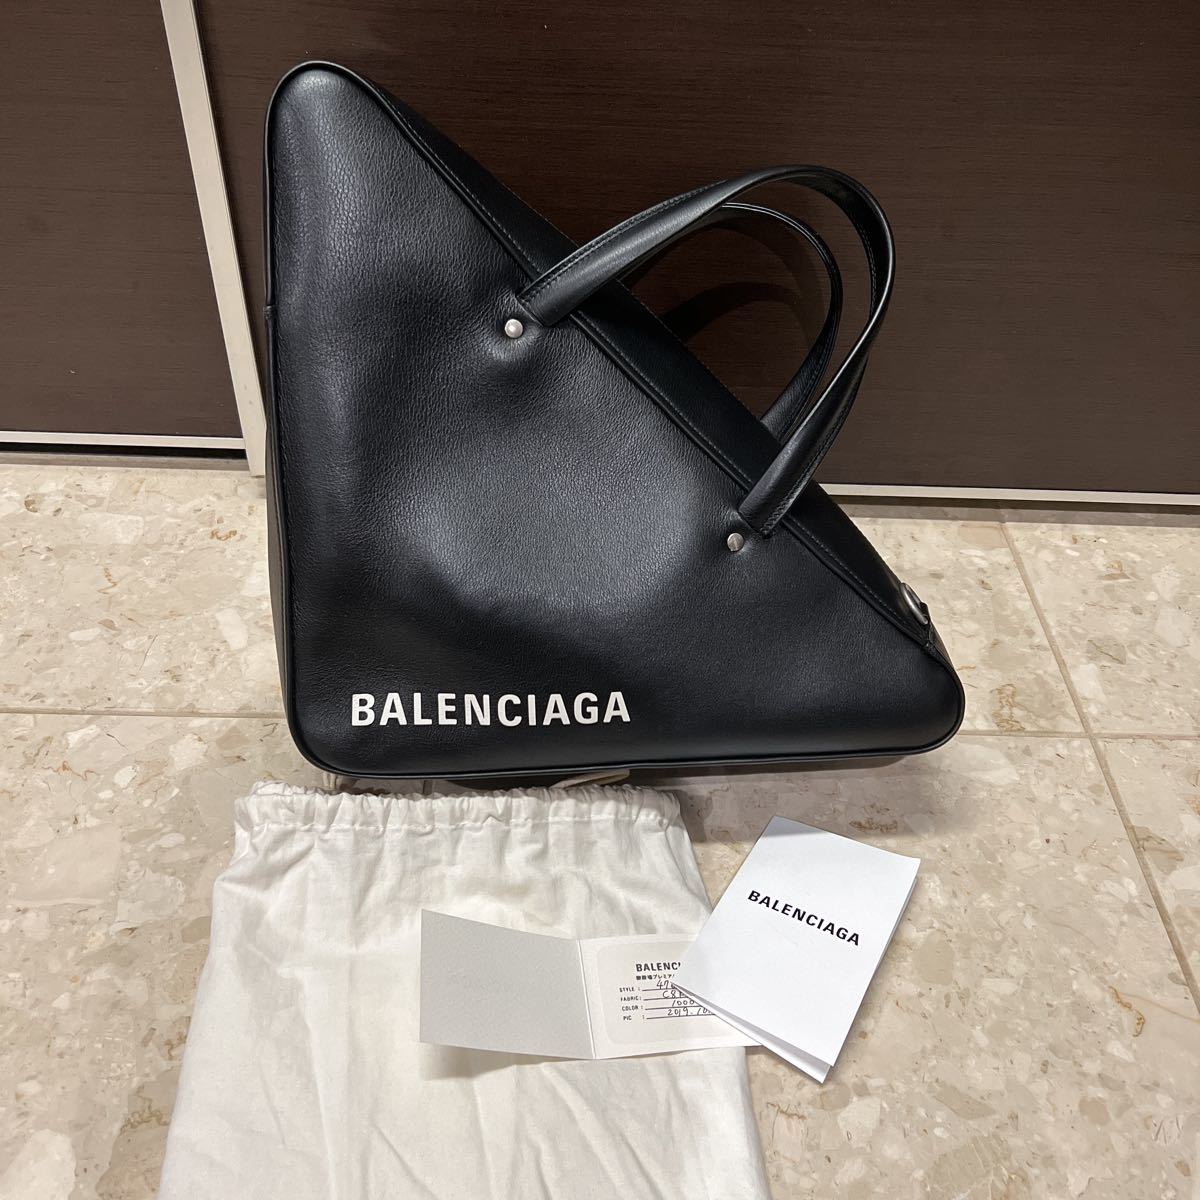  Balenciaga сумка внутренний стандартный товар распродажа цена 